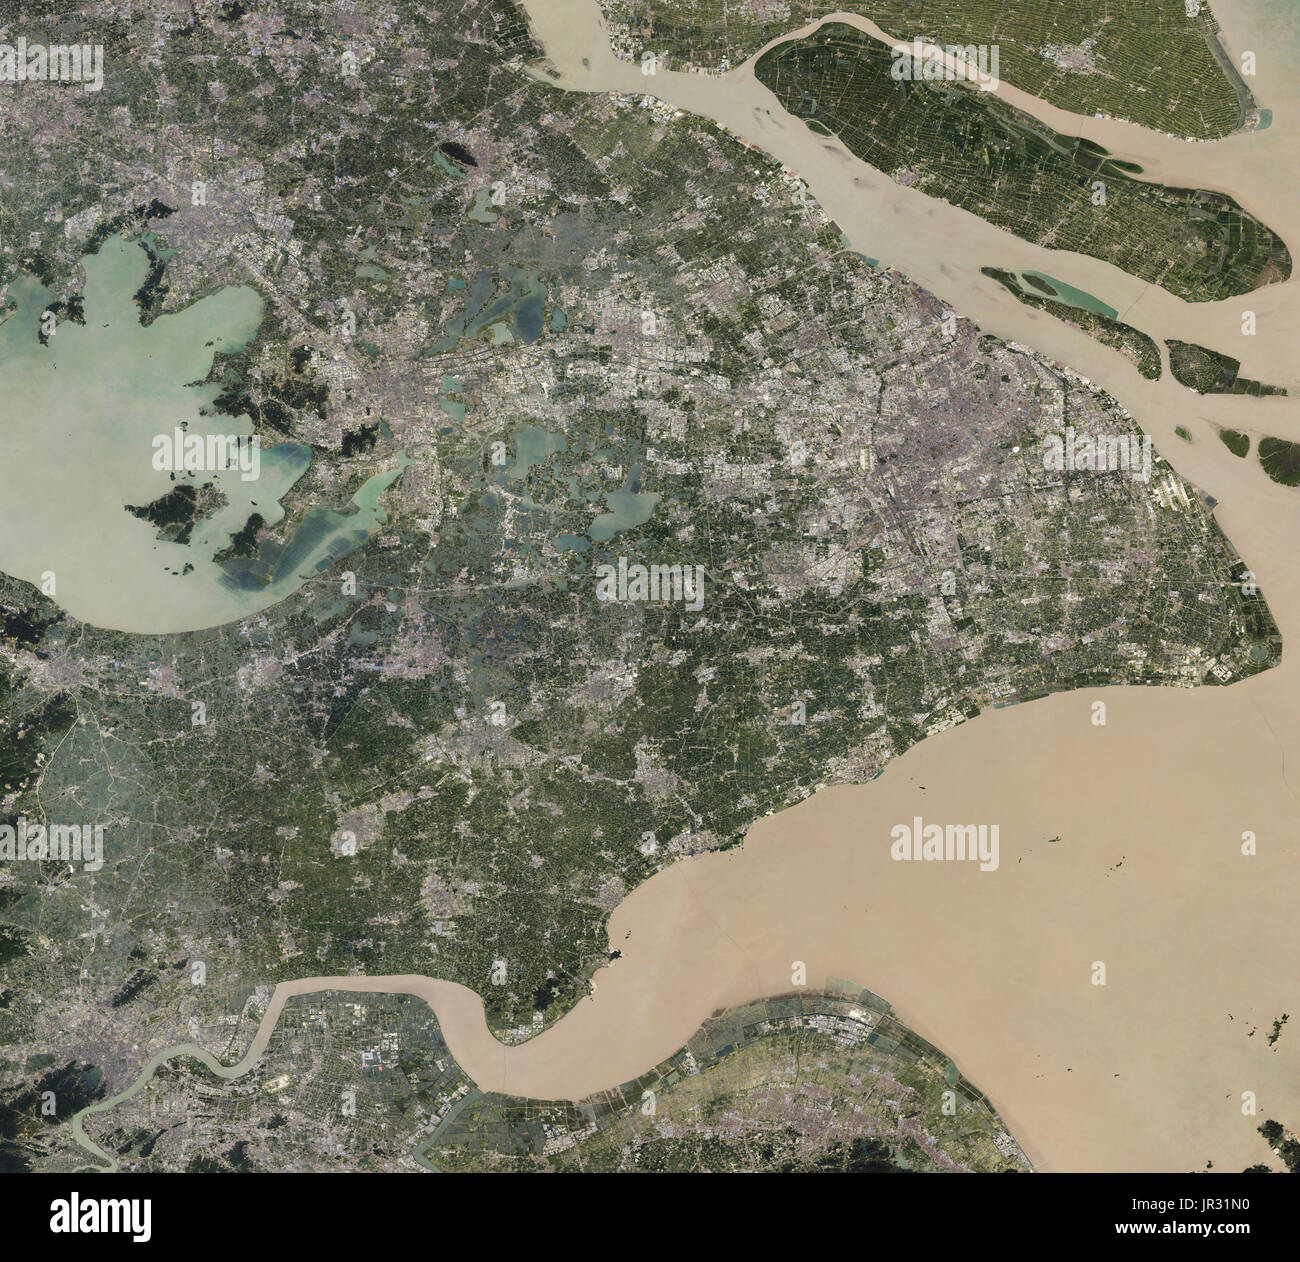 Shanghai, China, eingefangen durch operative Land Imager (OLI) auf Landsat 8 zwischen 2013 und 2017. Vergleichen Sie mit JG5370, Shanghai aus den späten 1980er Jahren zeigen. Stockfoto